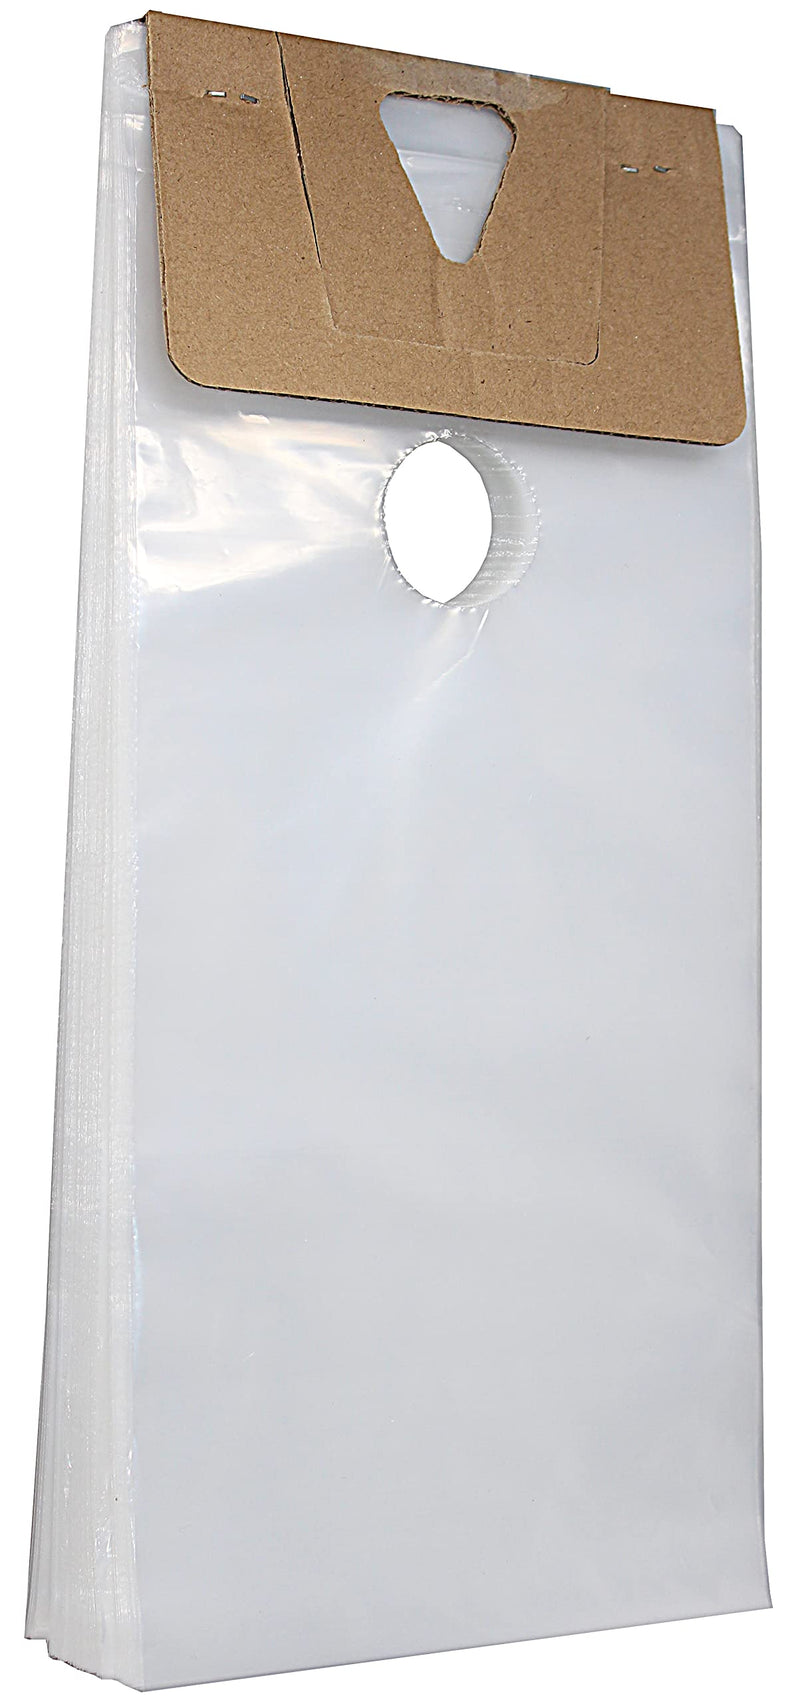 [Australia - AusPower] - Skywin 100 Plastic Door Hanger Bags 6 x 12 inches - Clear Door Hanger Bags Protects Flyers, Brochures, Notices, Printed Materials - Waterproof and Secure Door Knob Hanger for Outdoor Use (100) 